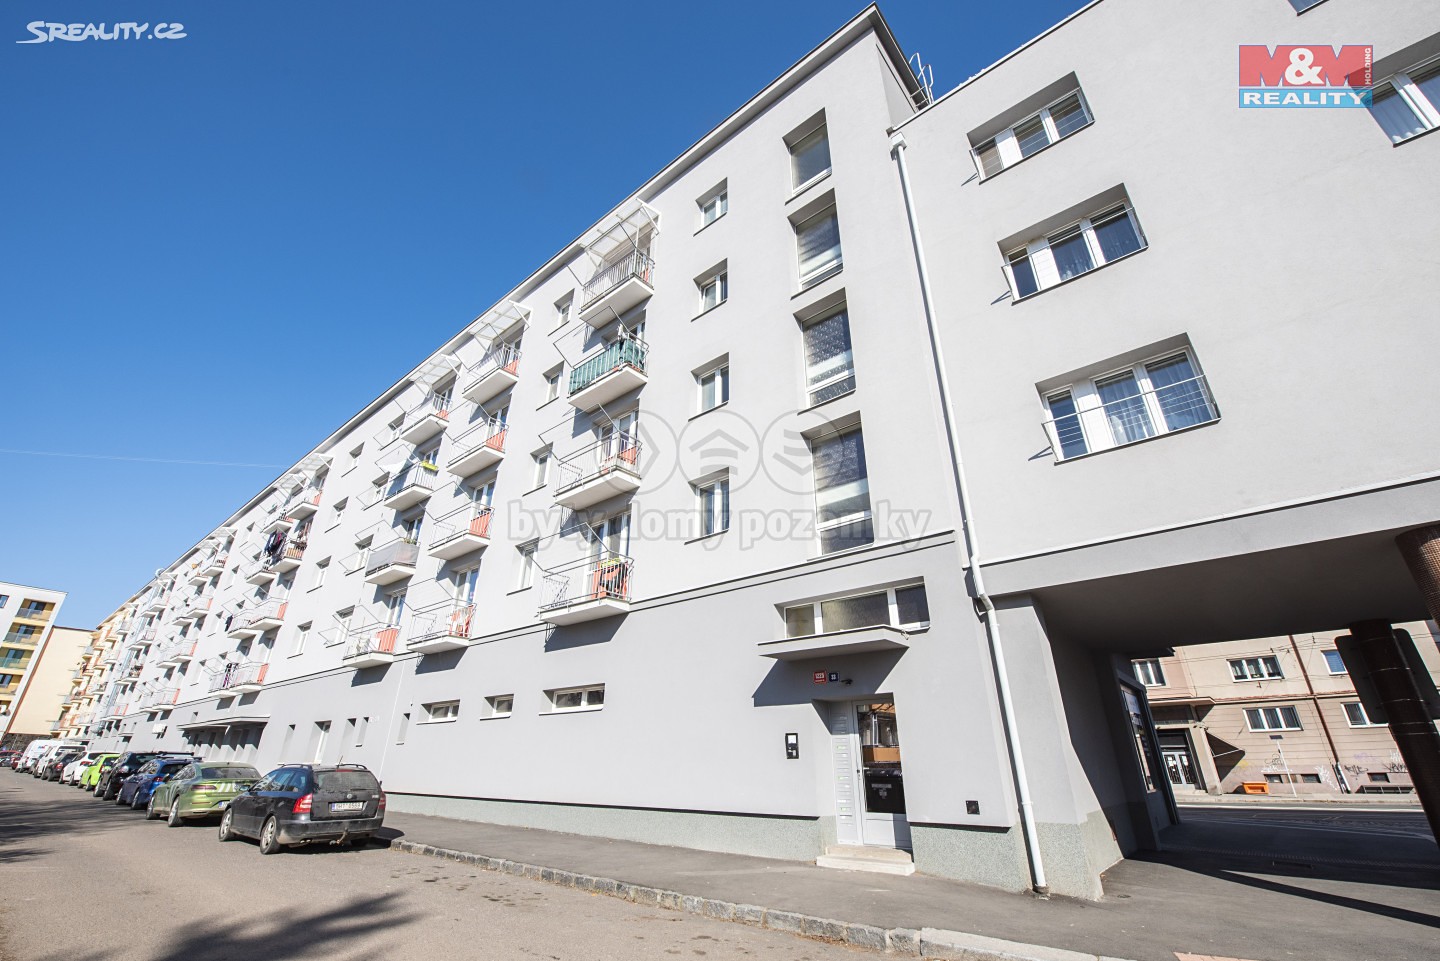 Pronájem bytu 1+1 40 m², Gočárova třída, Hradec Králové - Pražské Předměstí